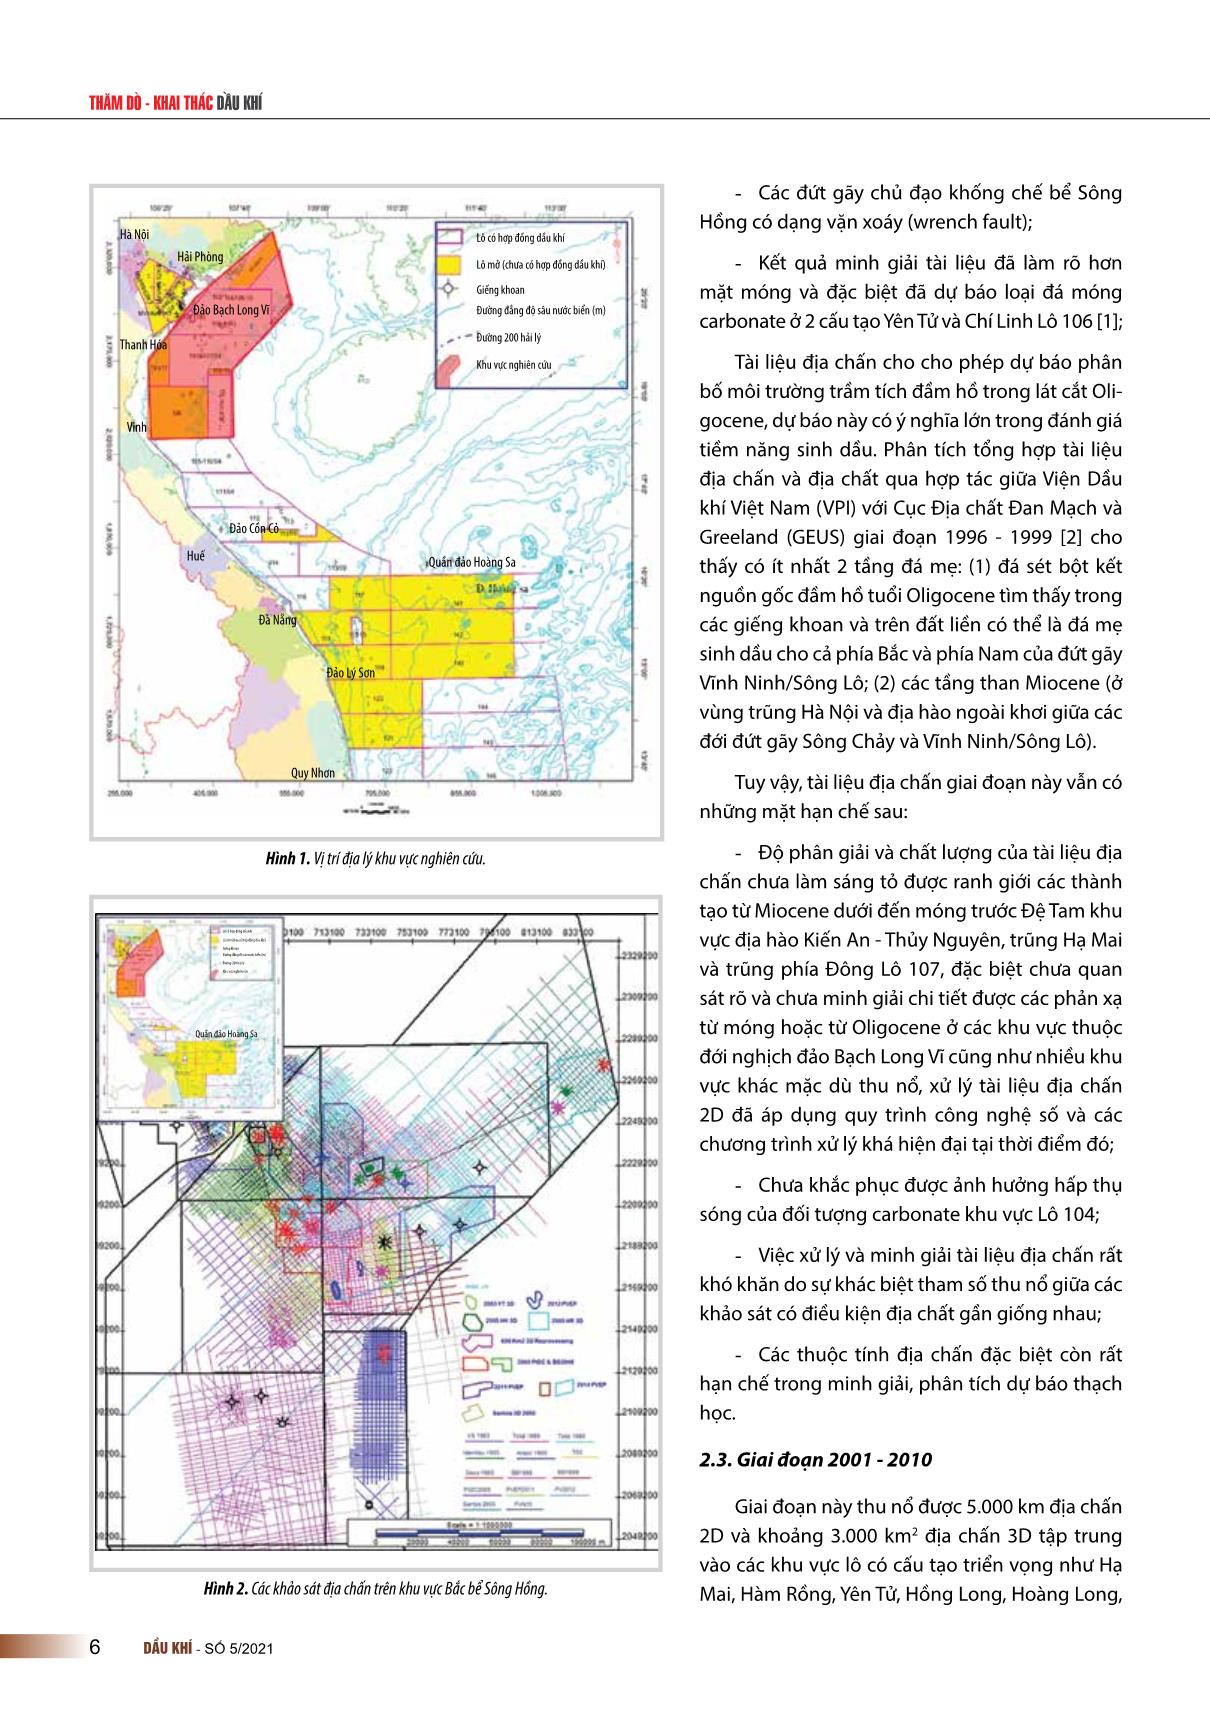 Kết quả khảo sát địa chấn khu vực ngoài khơi phía Bắc vịnh Bắc Bộ trang 2